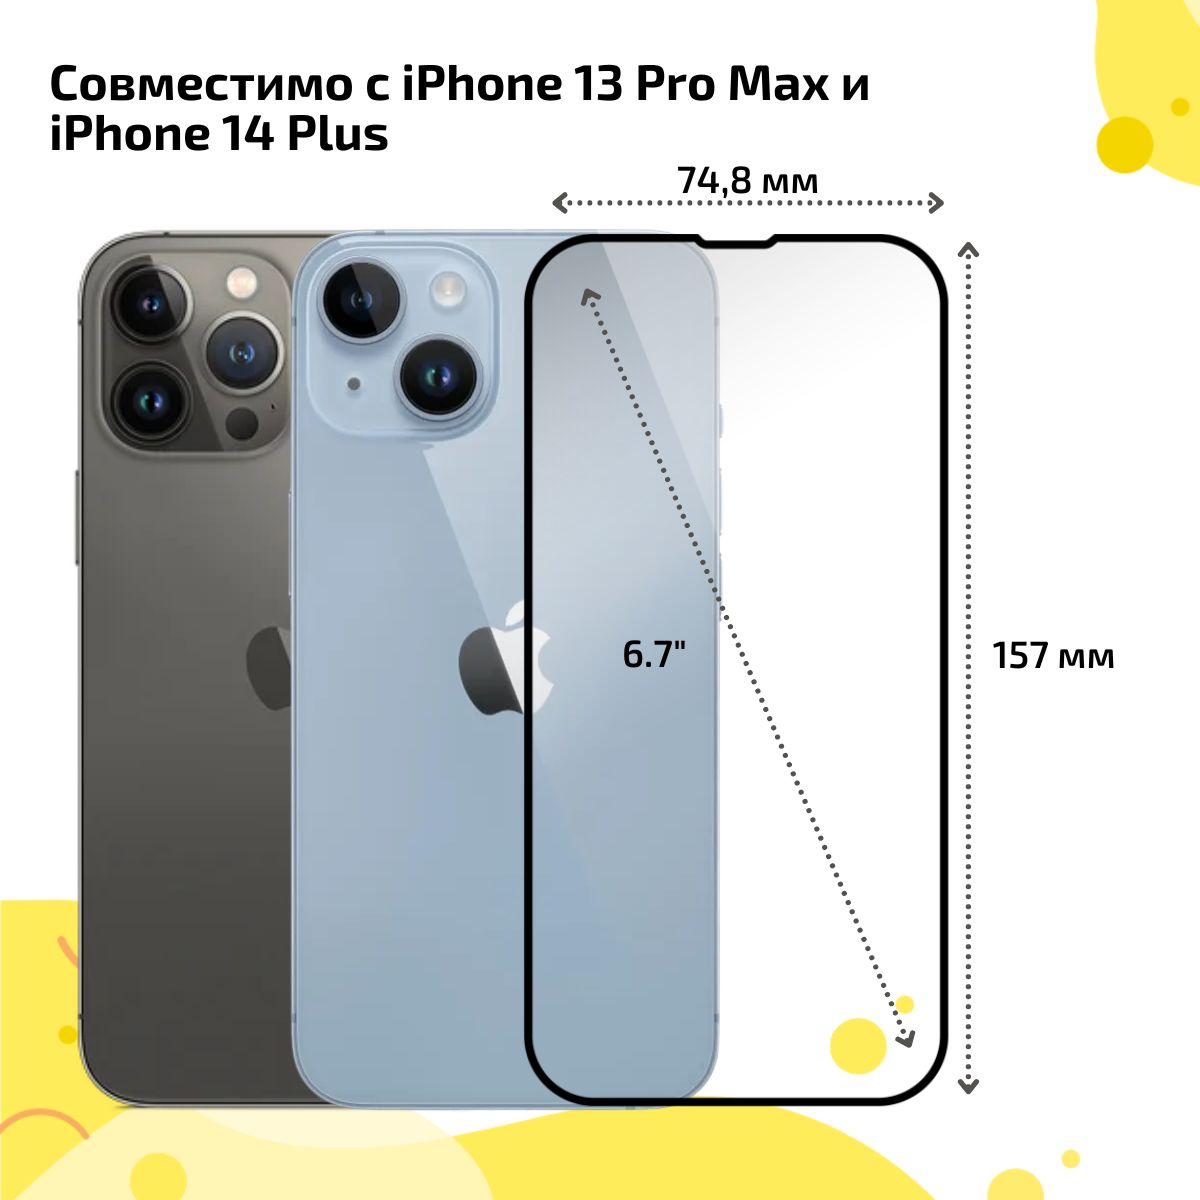 Айфон 14 Pro Max коробка фото спереди